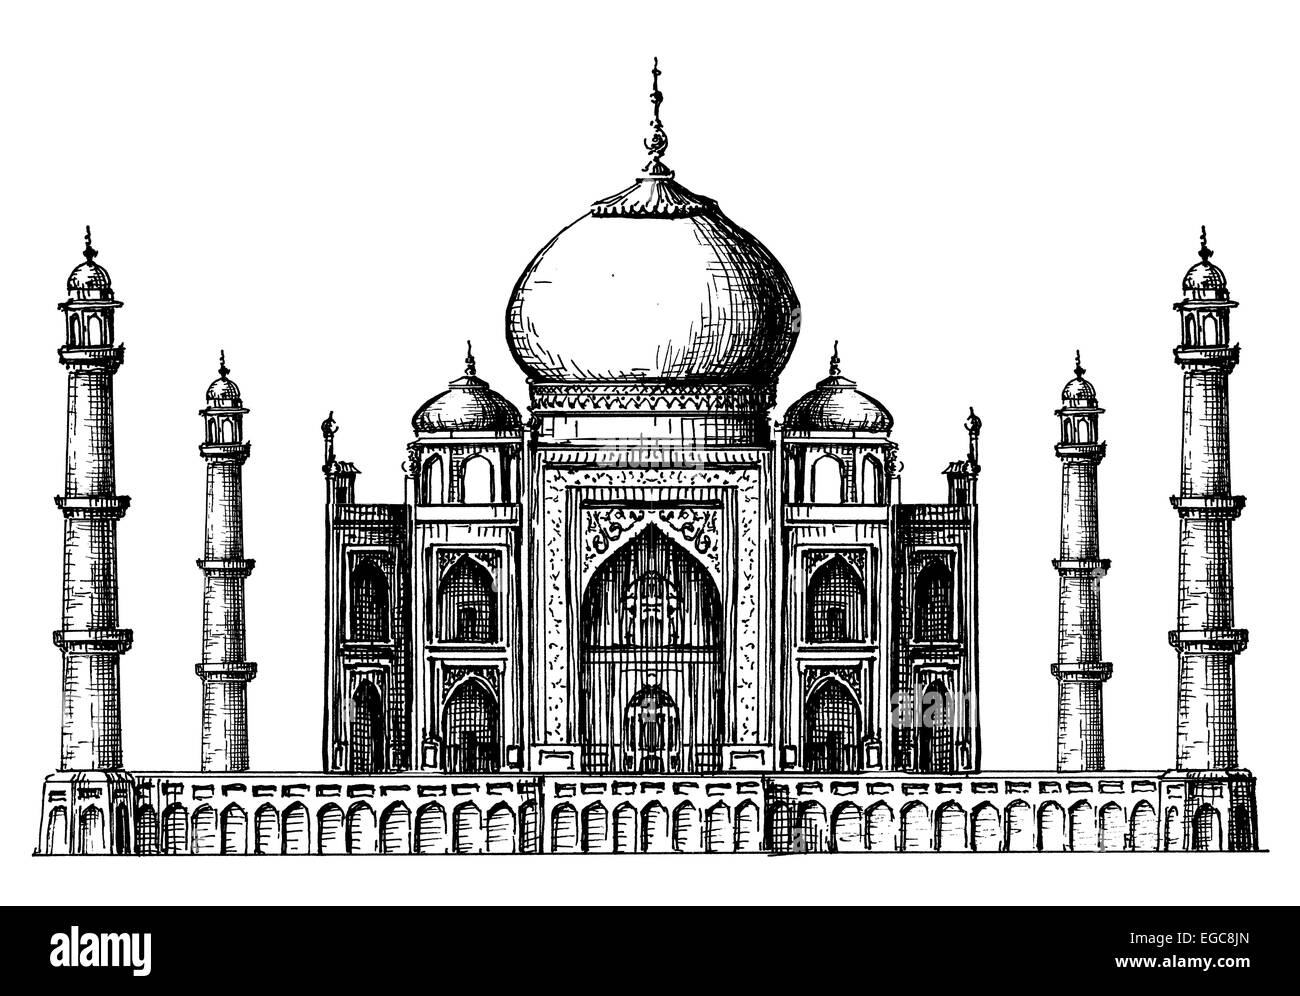 Architektur in Indien auf einem weißen Hintergrund. Vektor-illustration Stockfoto